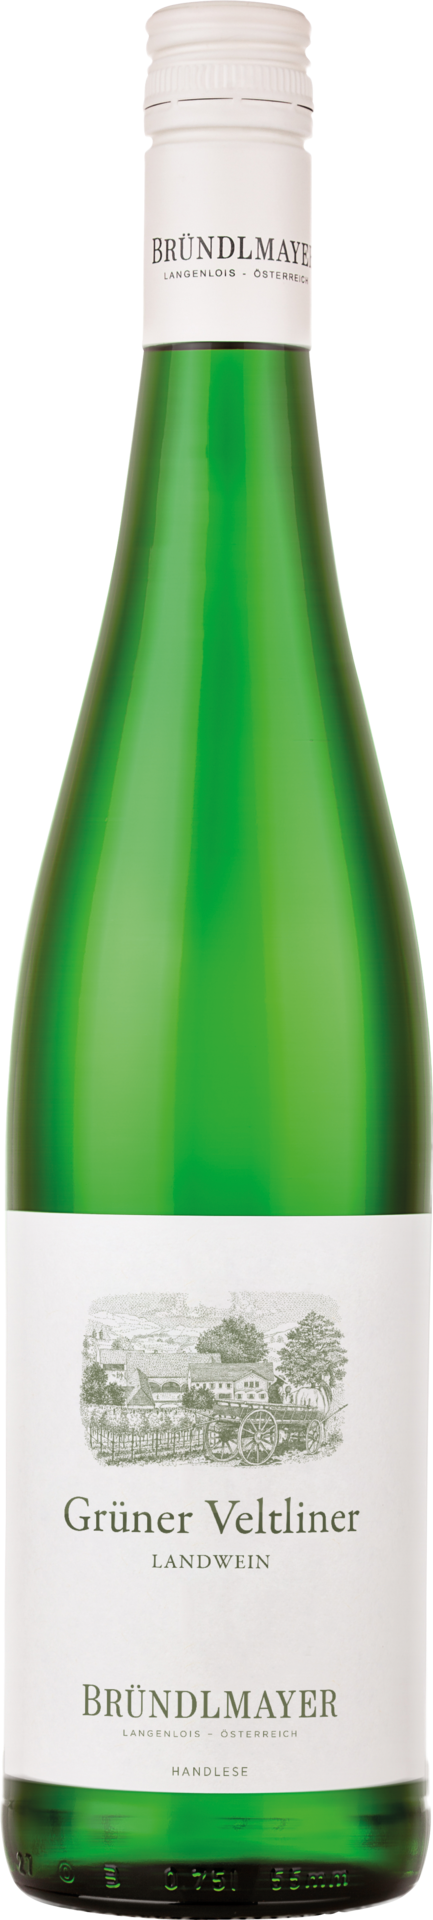 Bründlmayer Grüner Veltliner Landwein Weißwein trocken 2022 (0,75l) -  Weinhof Rudolstadt